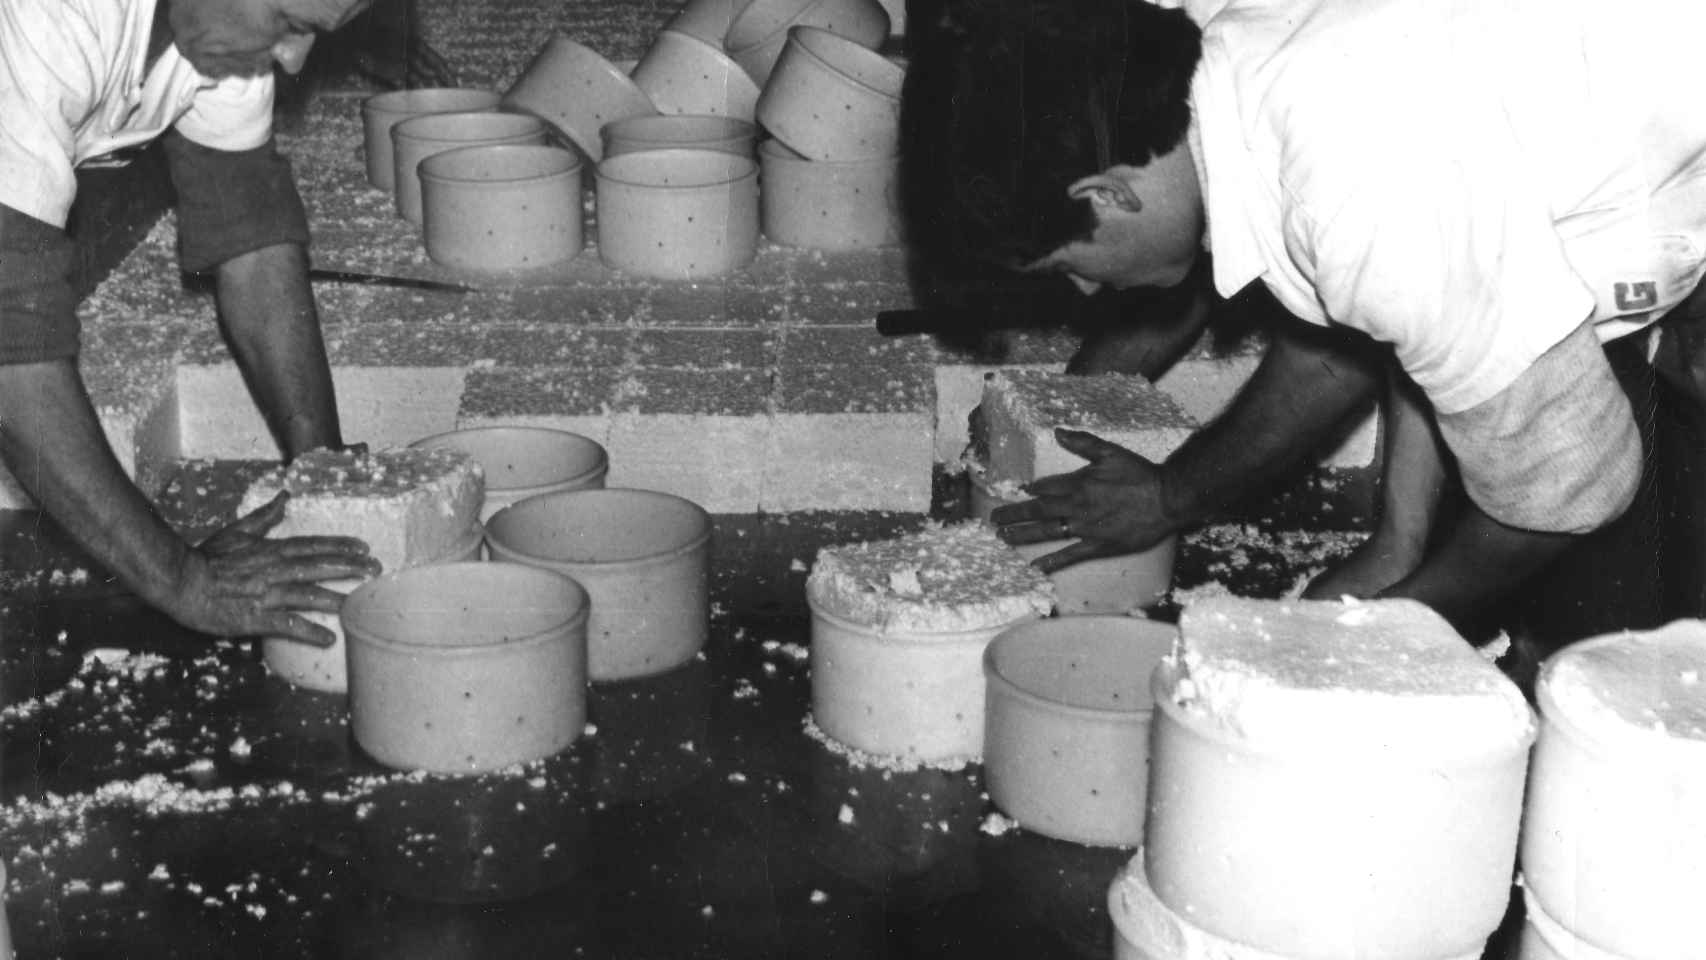 Imagen antigua de la fabricación de quesos. Fotografía cedida por Lactalis